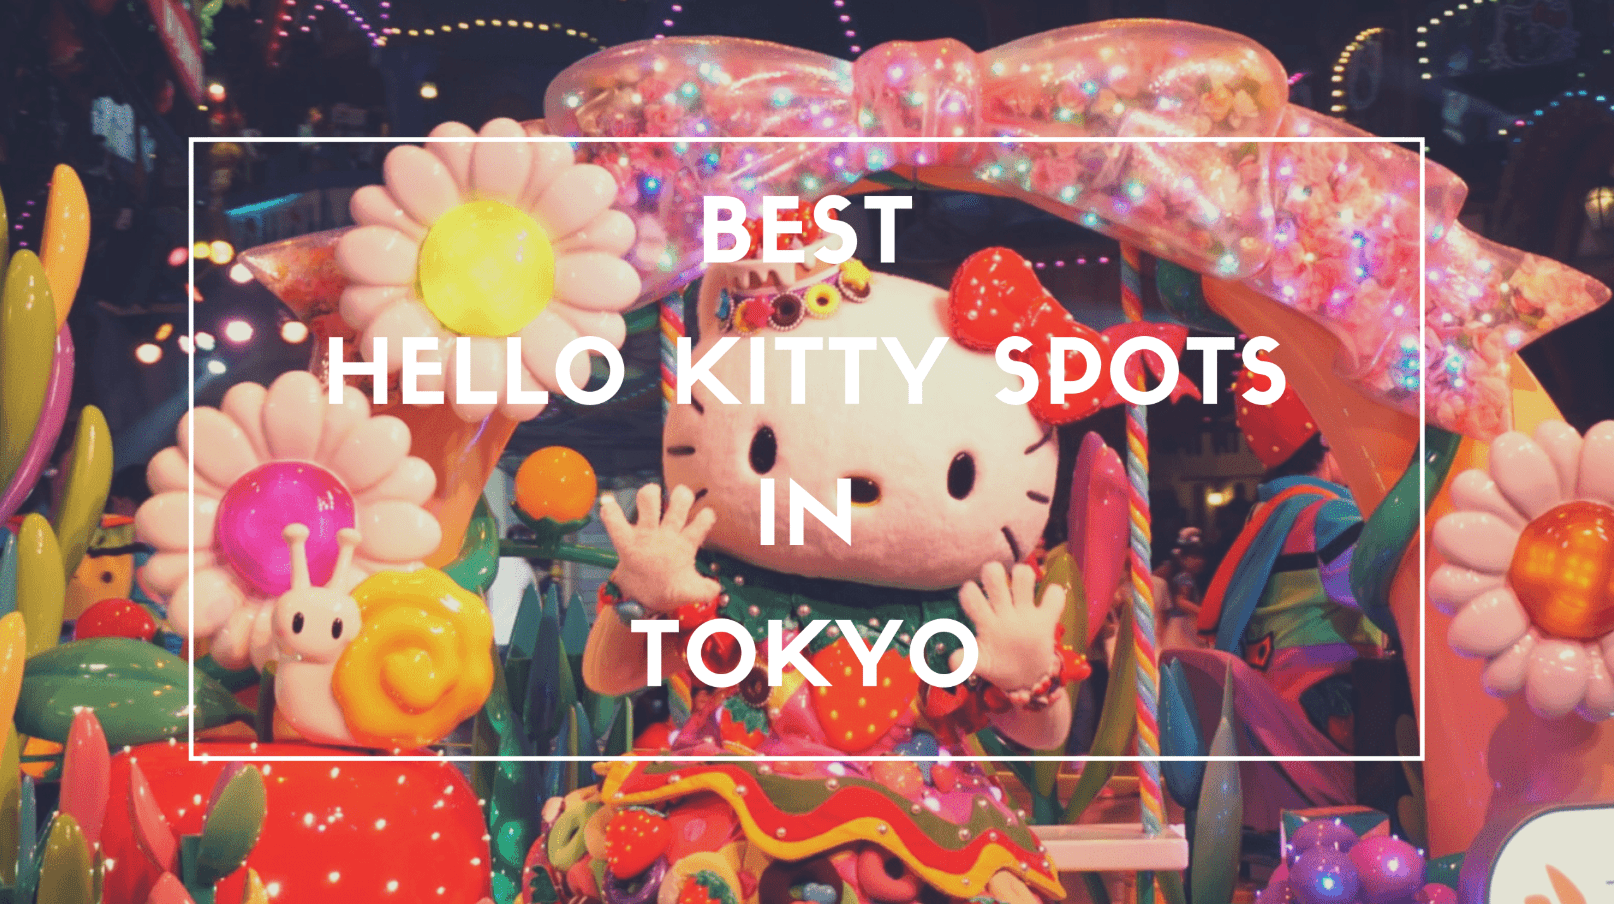 5 Best Hello Kitty Spots in Tokyo